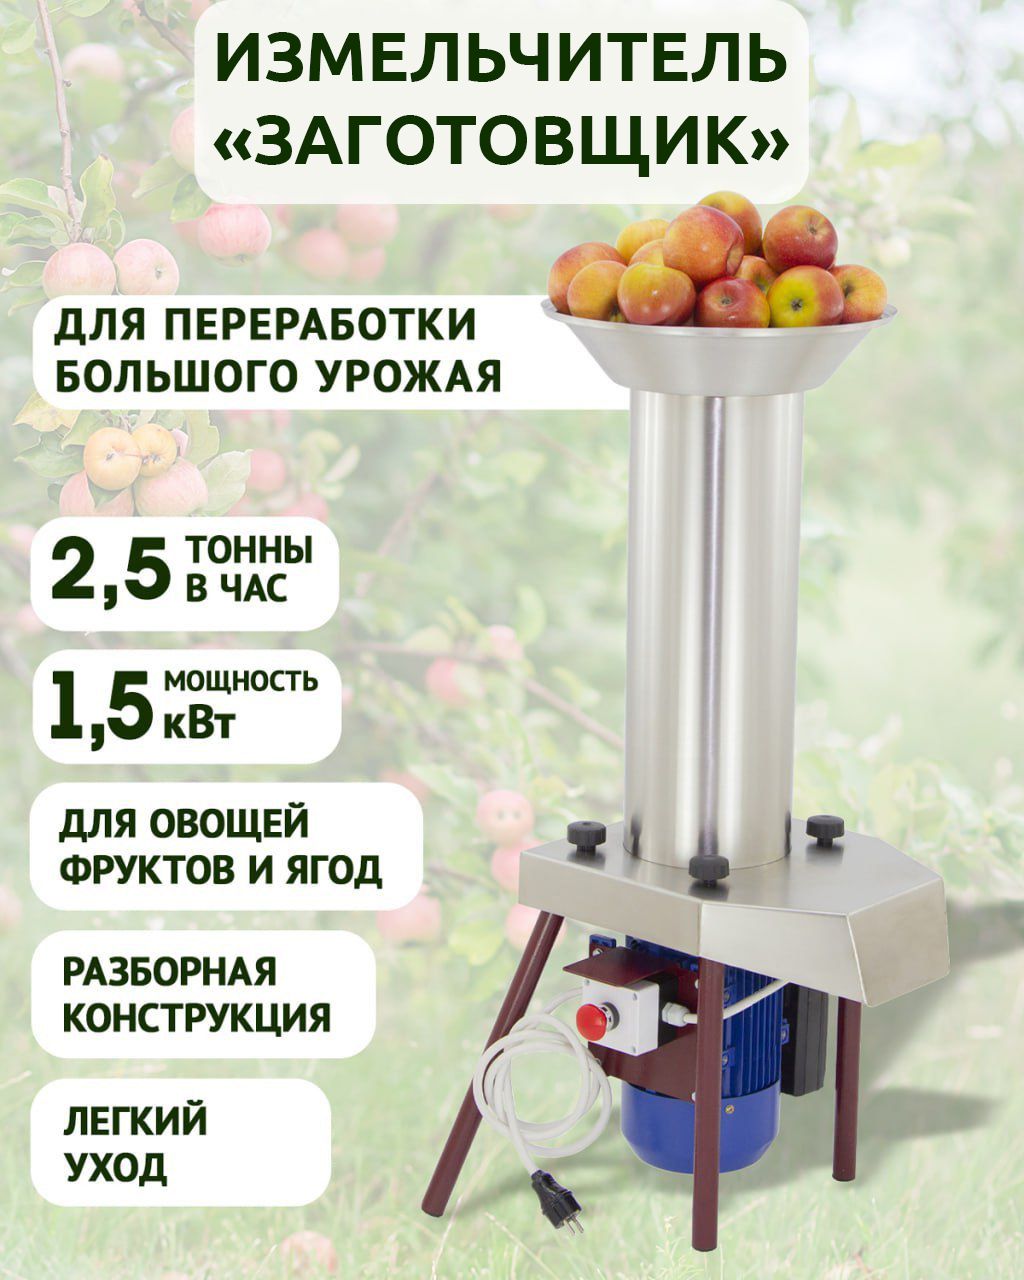 Дробилка для фруктов и овощей CUT Inox купить в Москве недорого. Доставка по России.